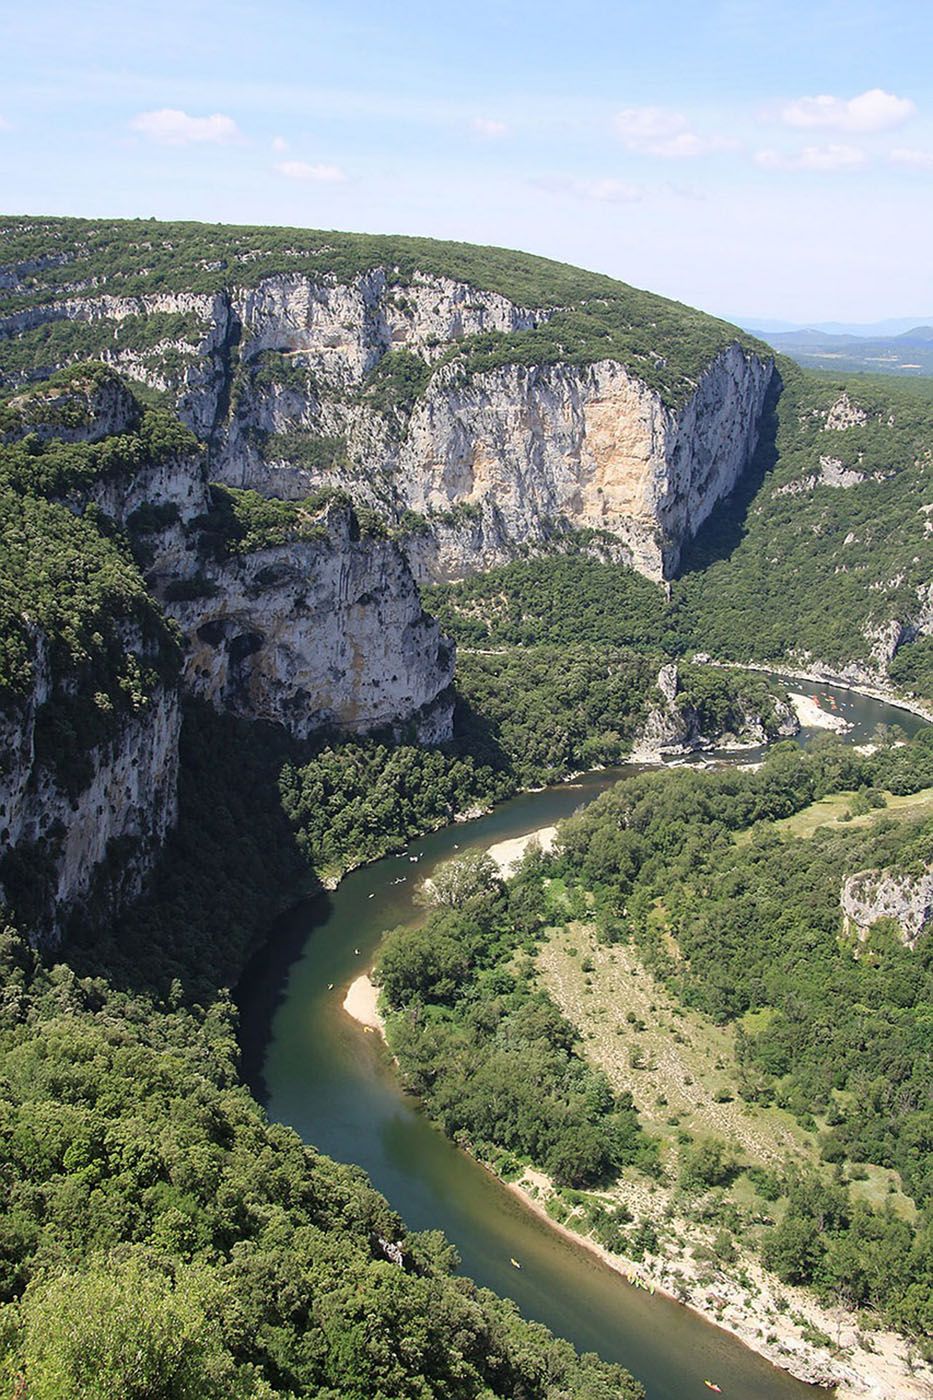 The Gorges de l'Ardèche